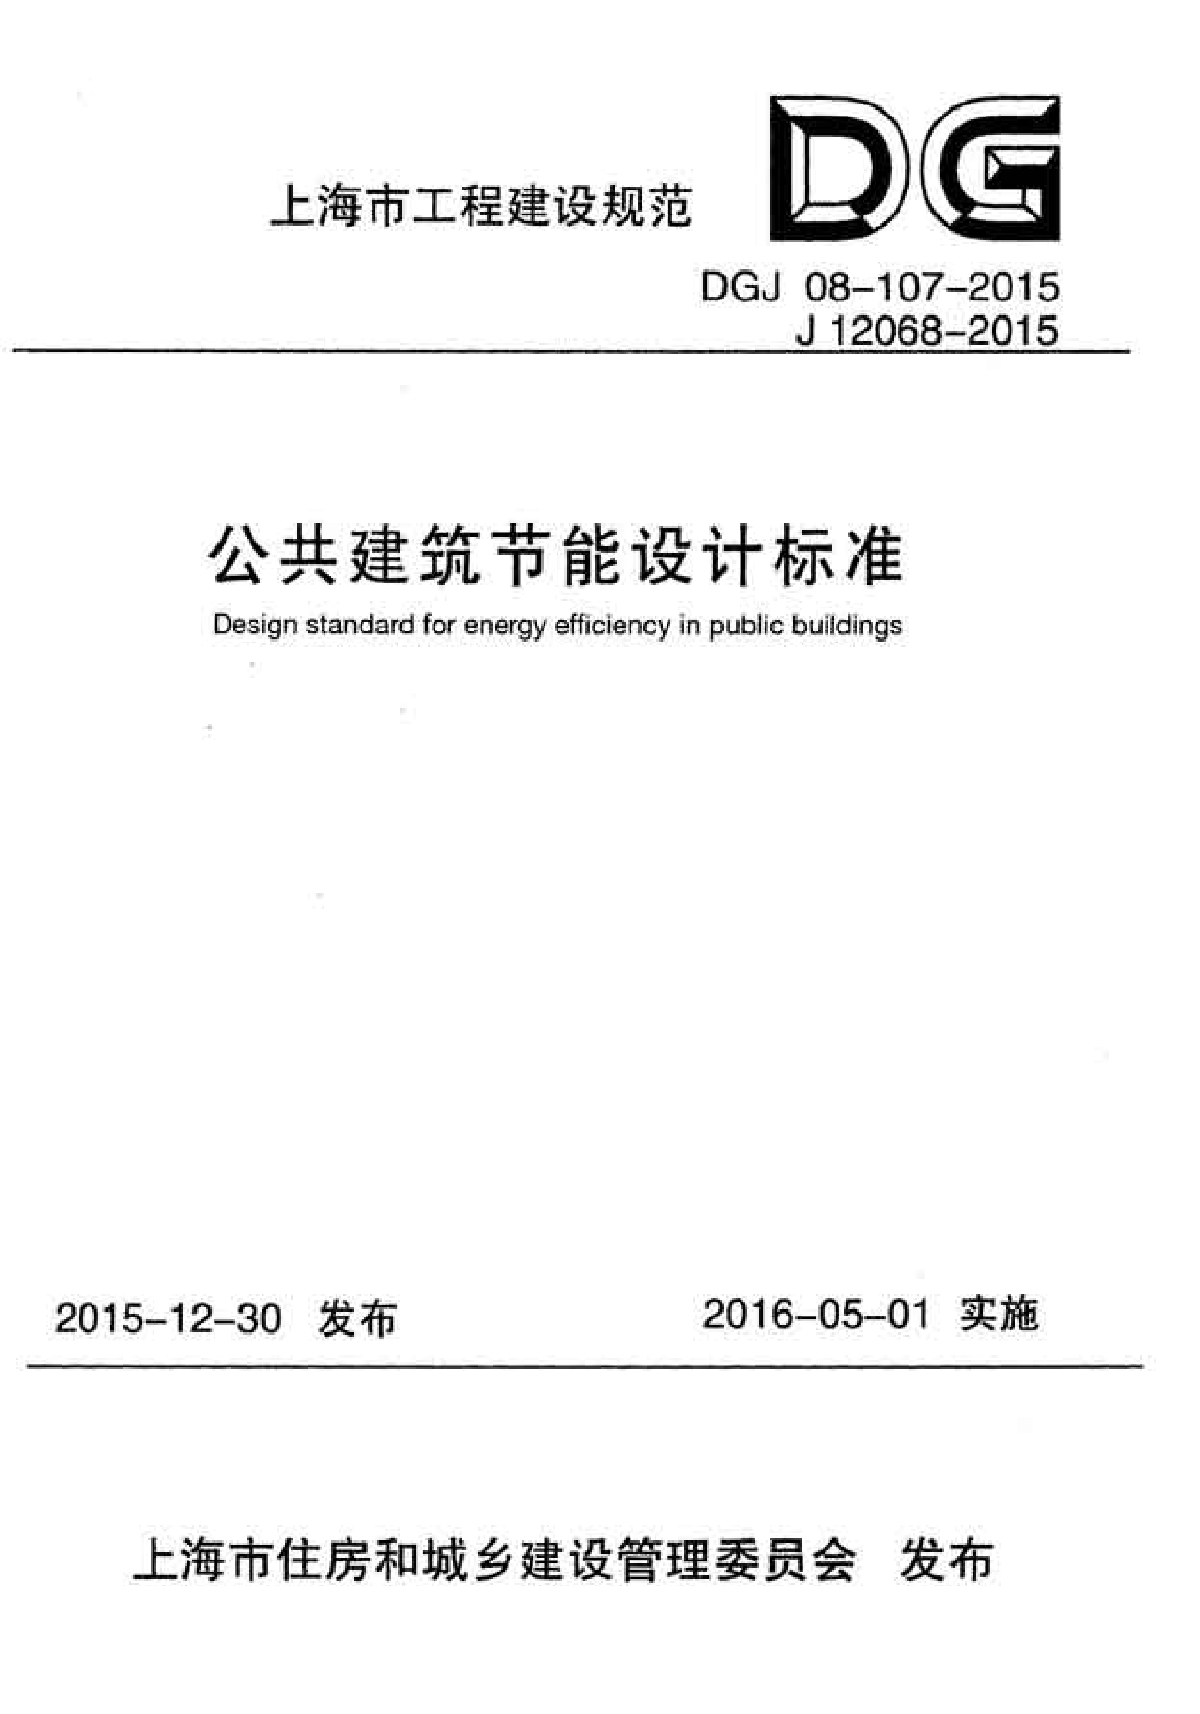 DGJ08-107-2015公共建筑节能设计标准